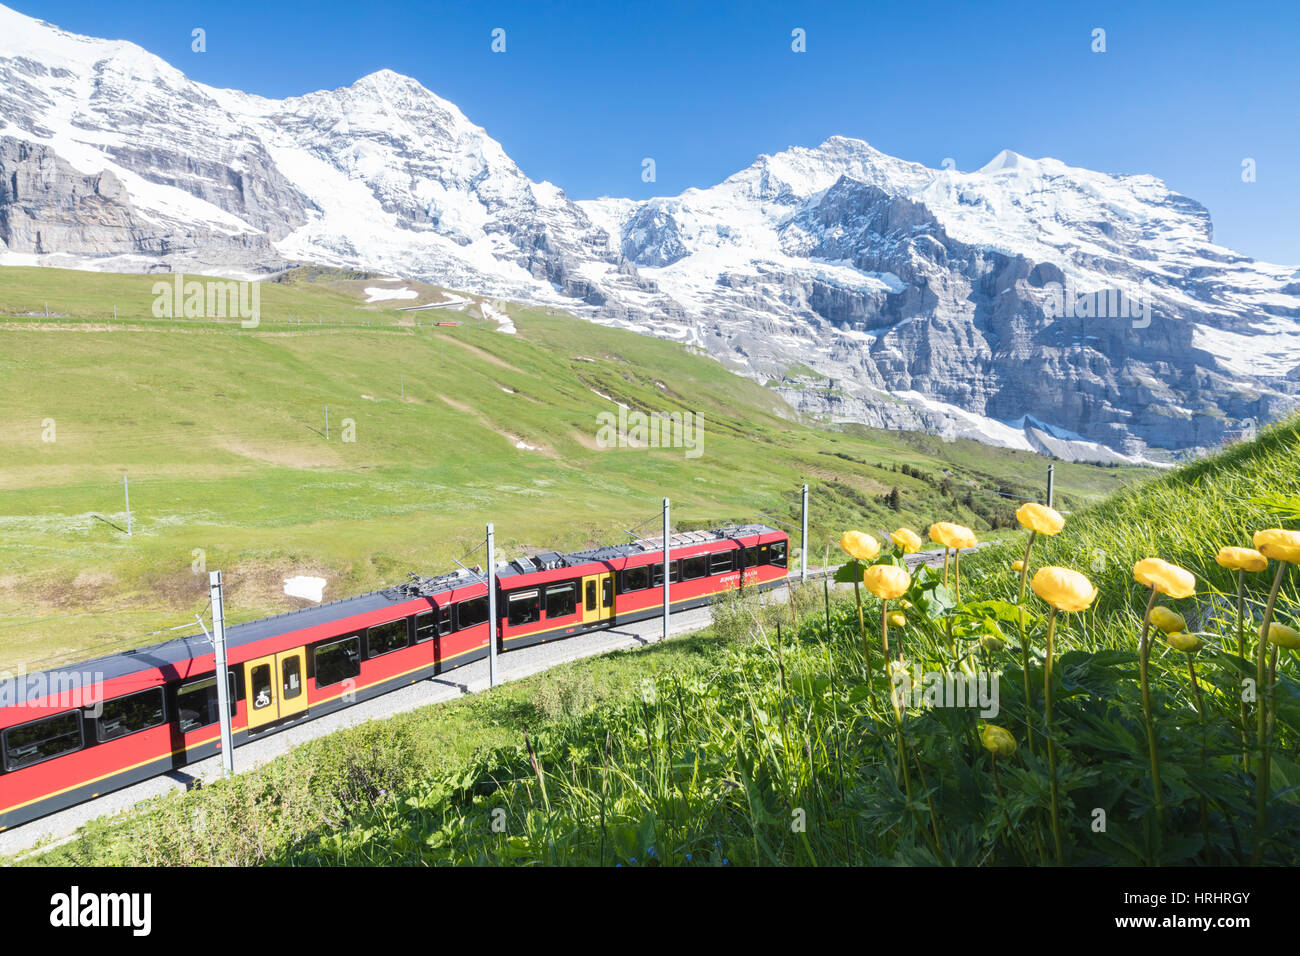 Il Wengernalpbahn ferrovia a cremagliera incorniciato da fiori e vette innevate, Wengen, Oberland bernese, il Cantone di Berna, Svizzera Foto Stock